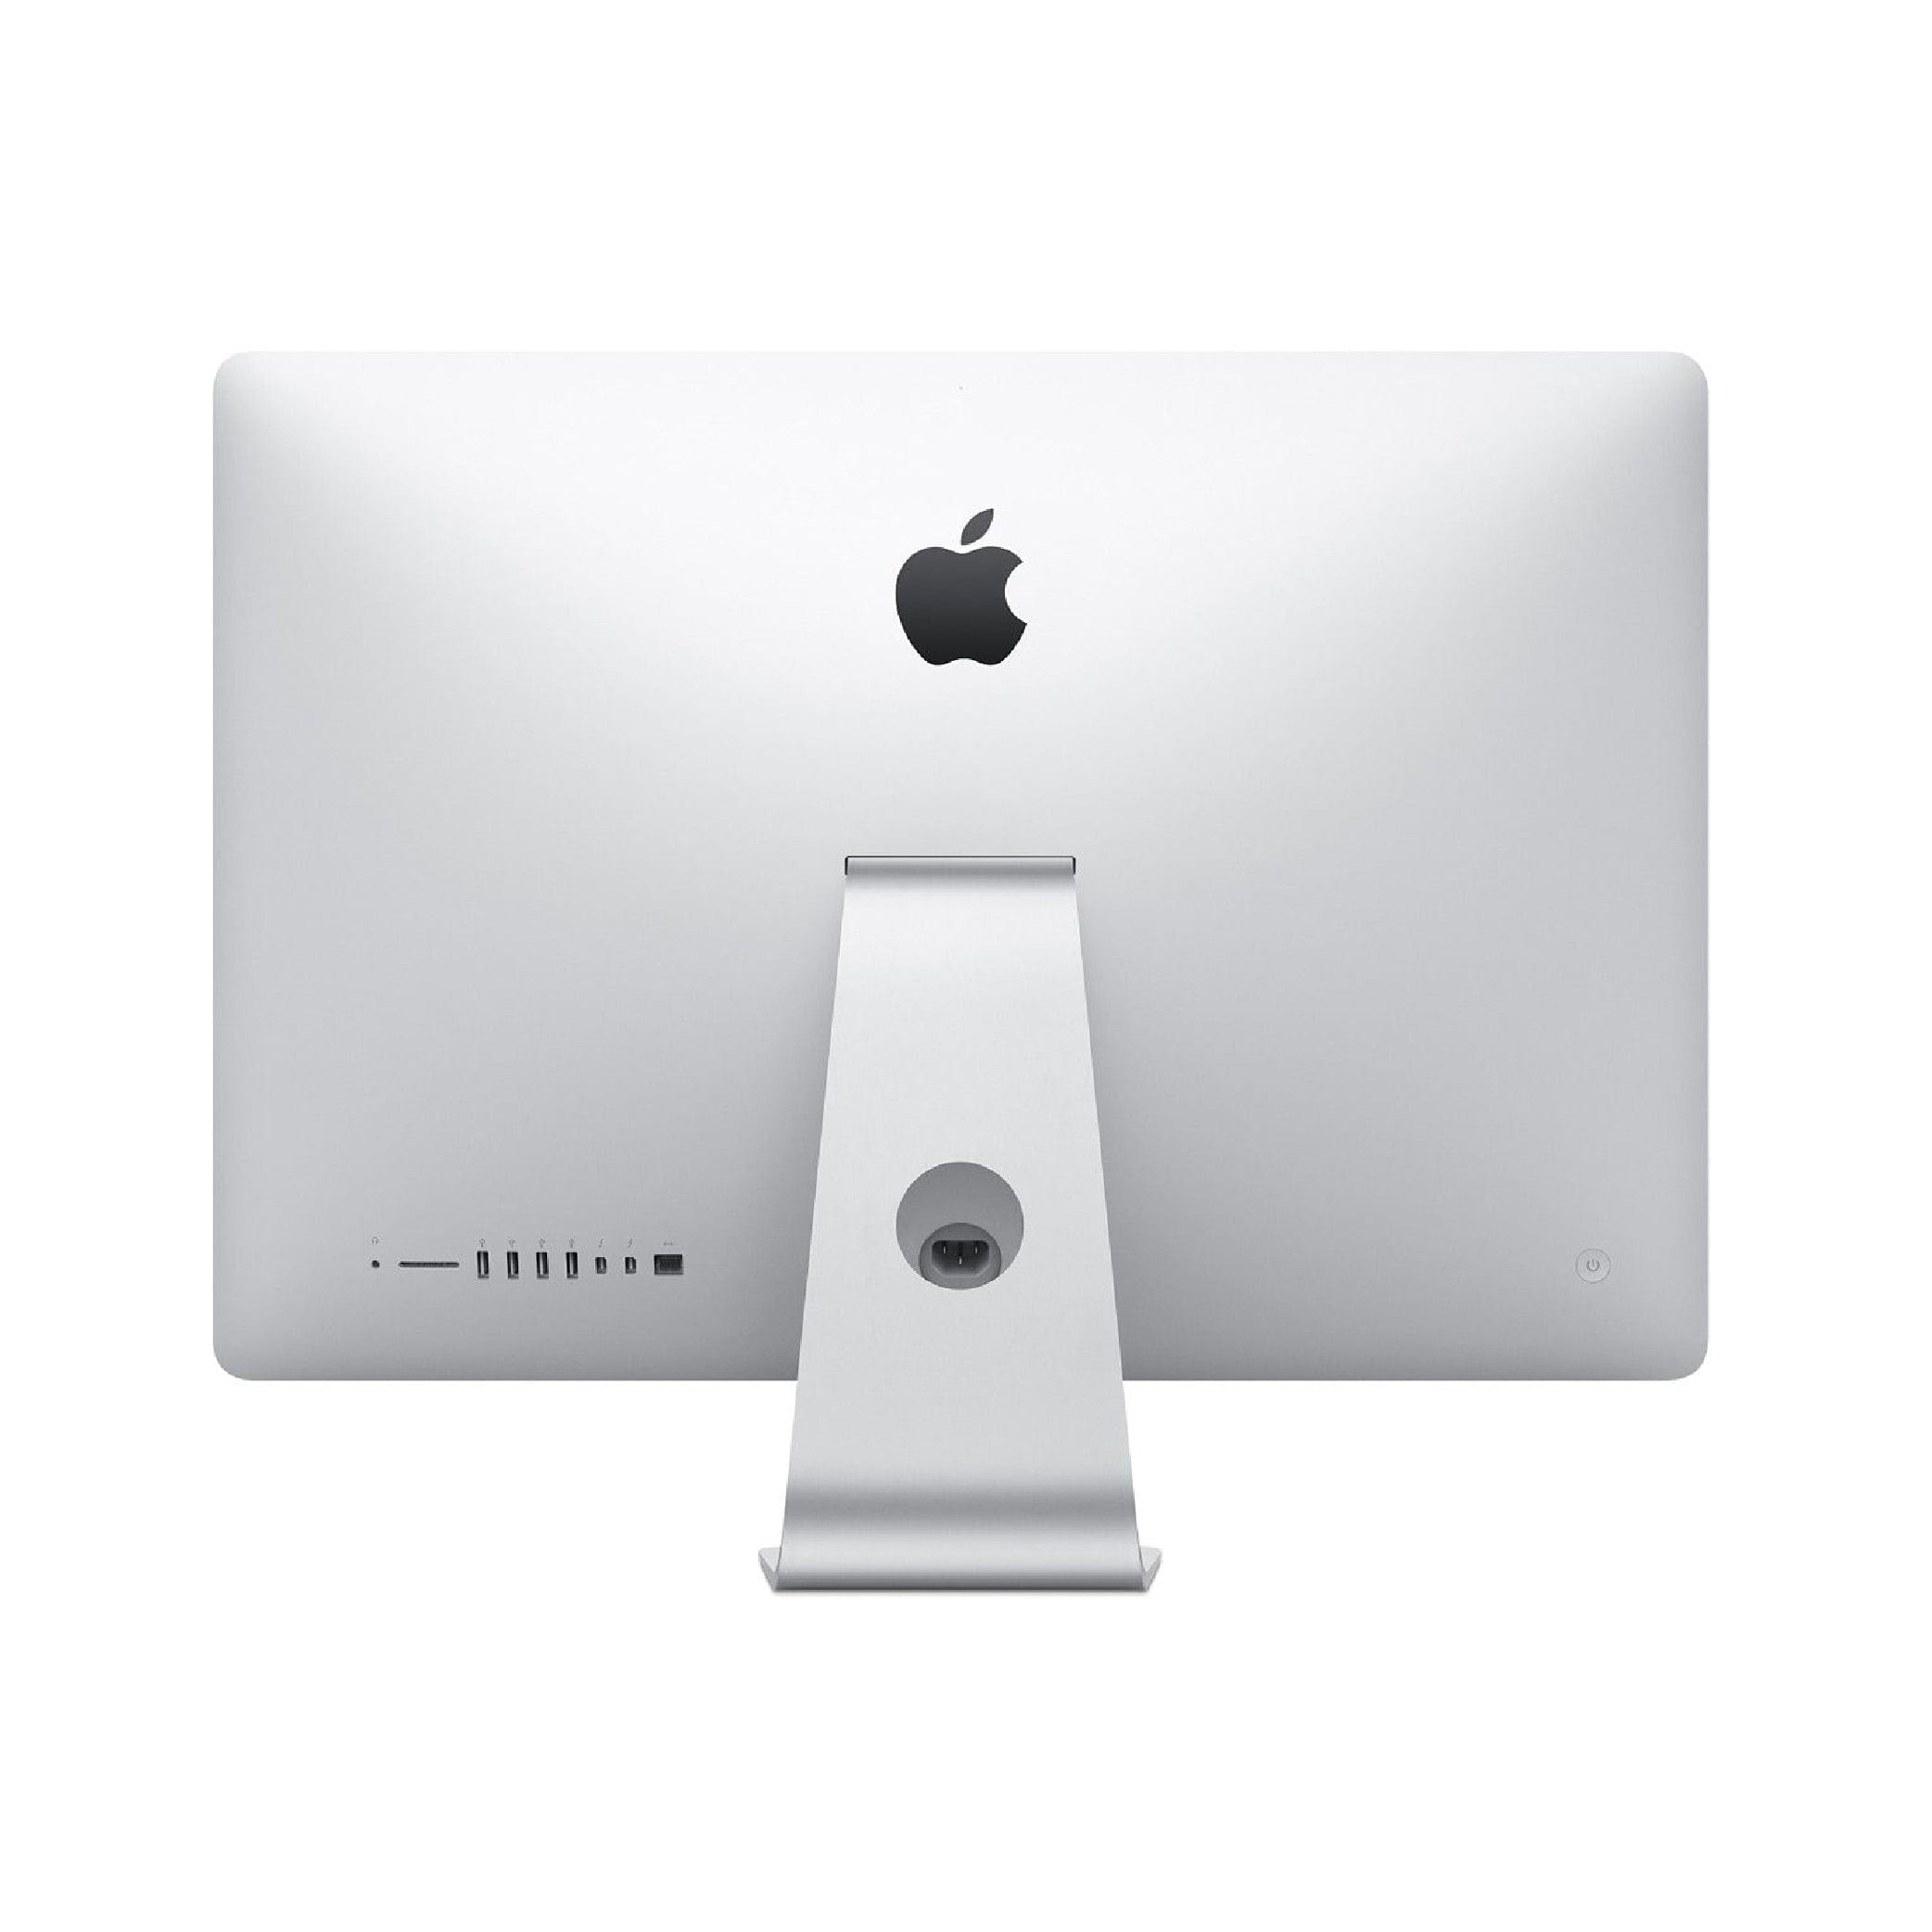 Apple iMac 27" Retina 5K display (2020) - Intel Core i5 (3.3GHz) - 8GB 512GB SSD - MXWU2LL/A - Silver